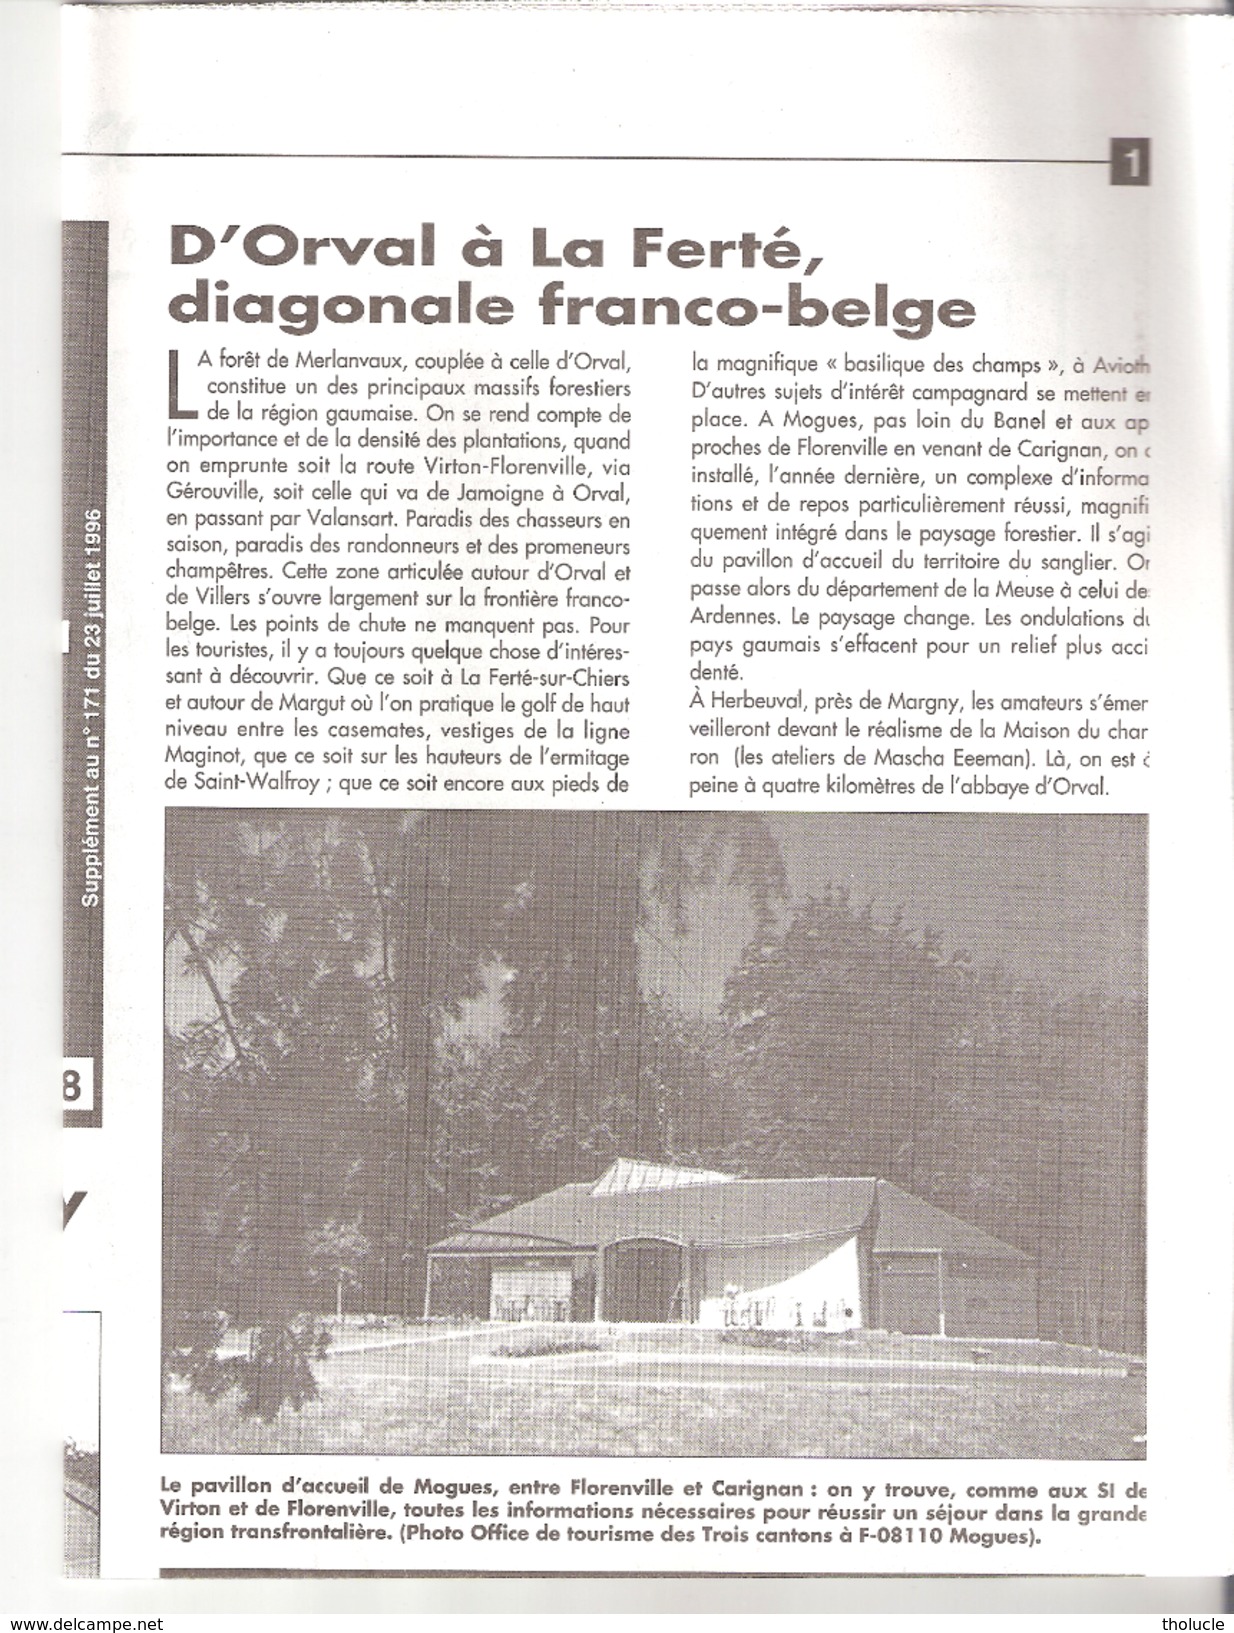 Villers-Devant-Orval-Carte IGN-70/3-4-1/25000+Belgique+France-Abbaye D'Orval-Avioth-Margut...-edit.Vers L'Avenir-1996 - Topographische Kaarten